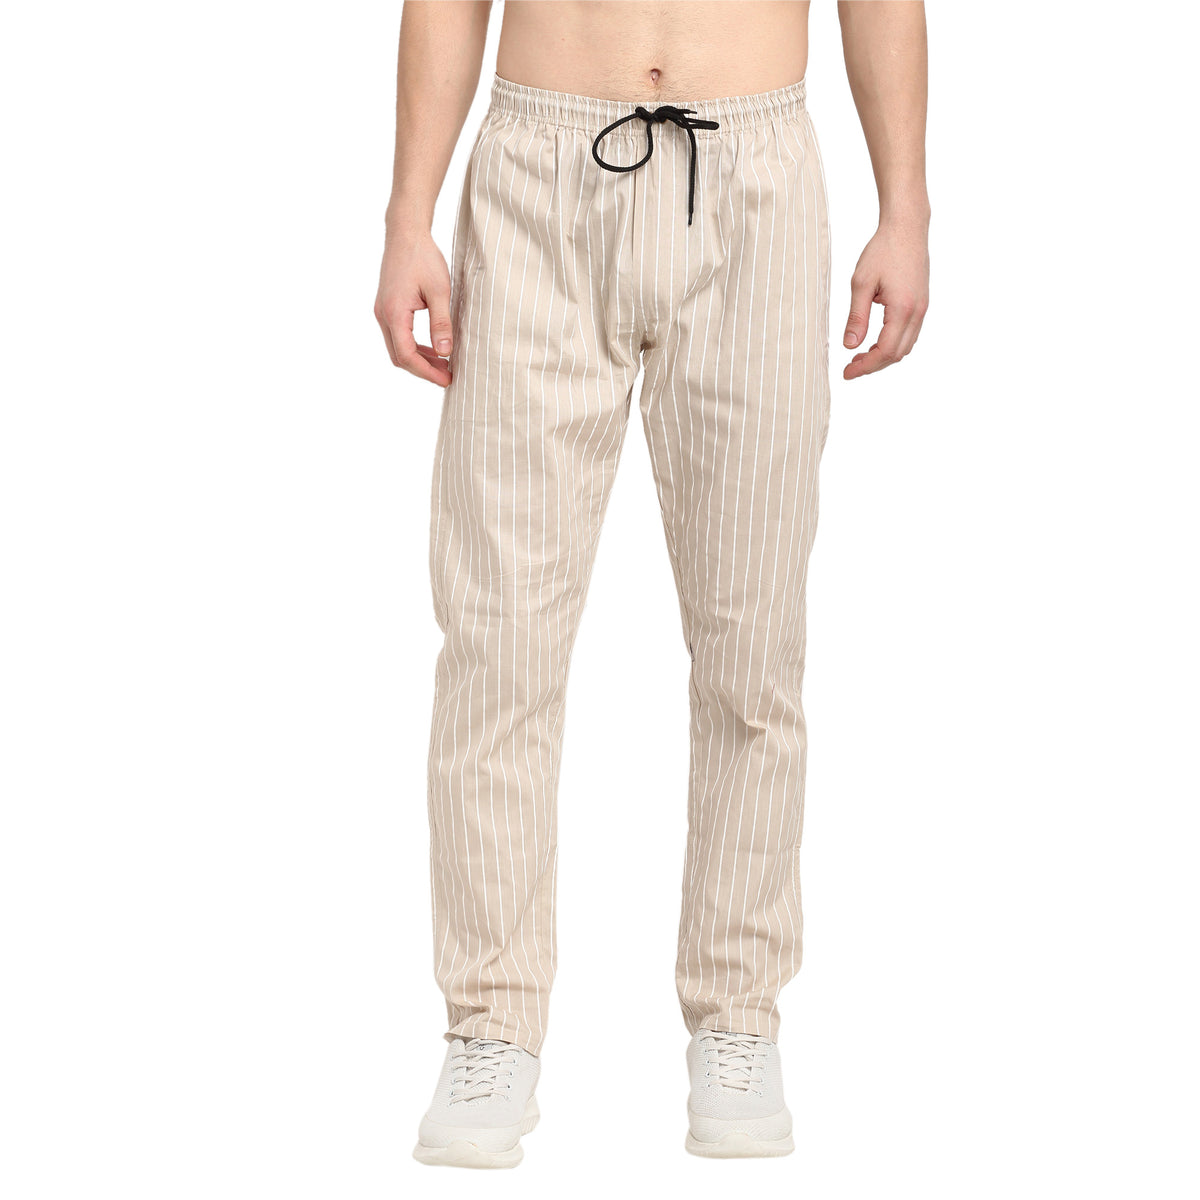 Jainish Men's Beige Cotton Striped Track Pants